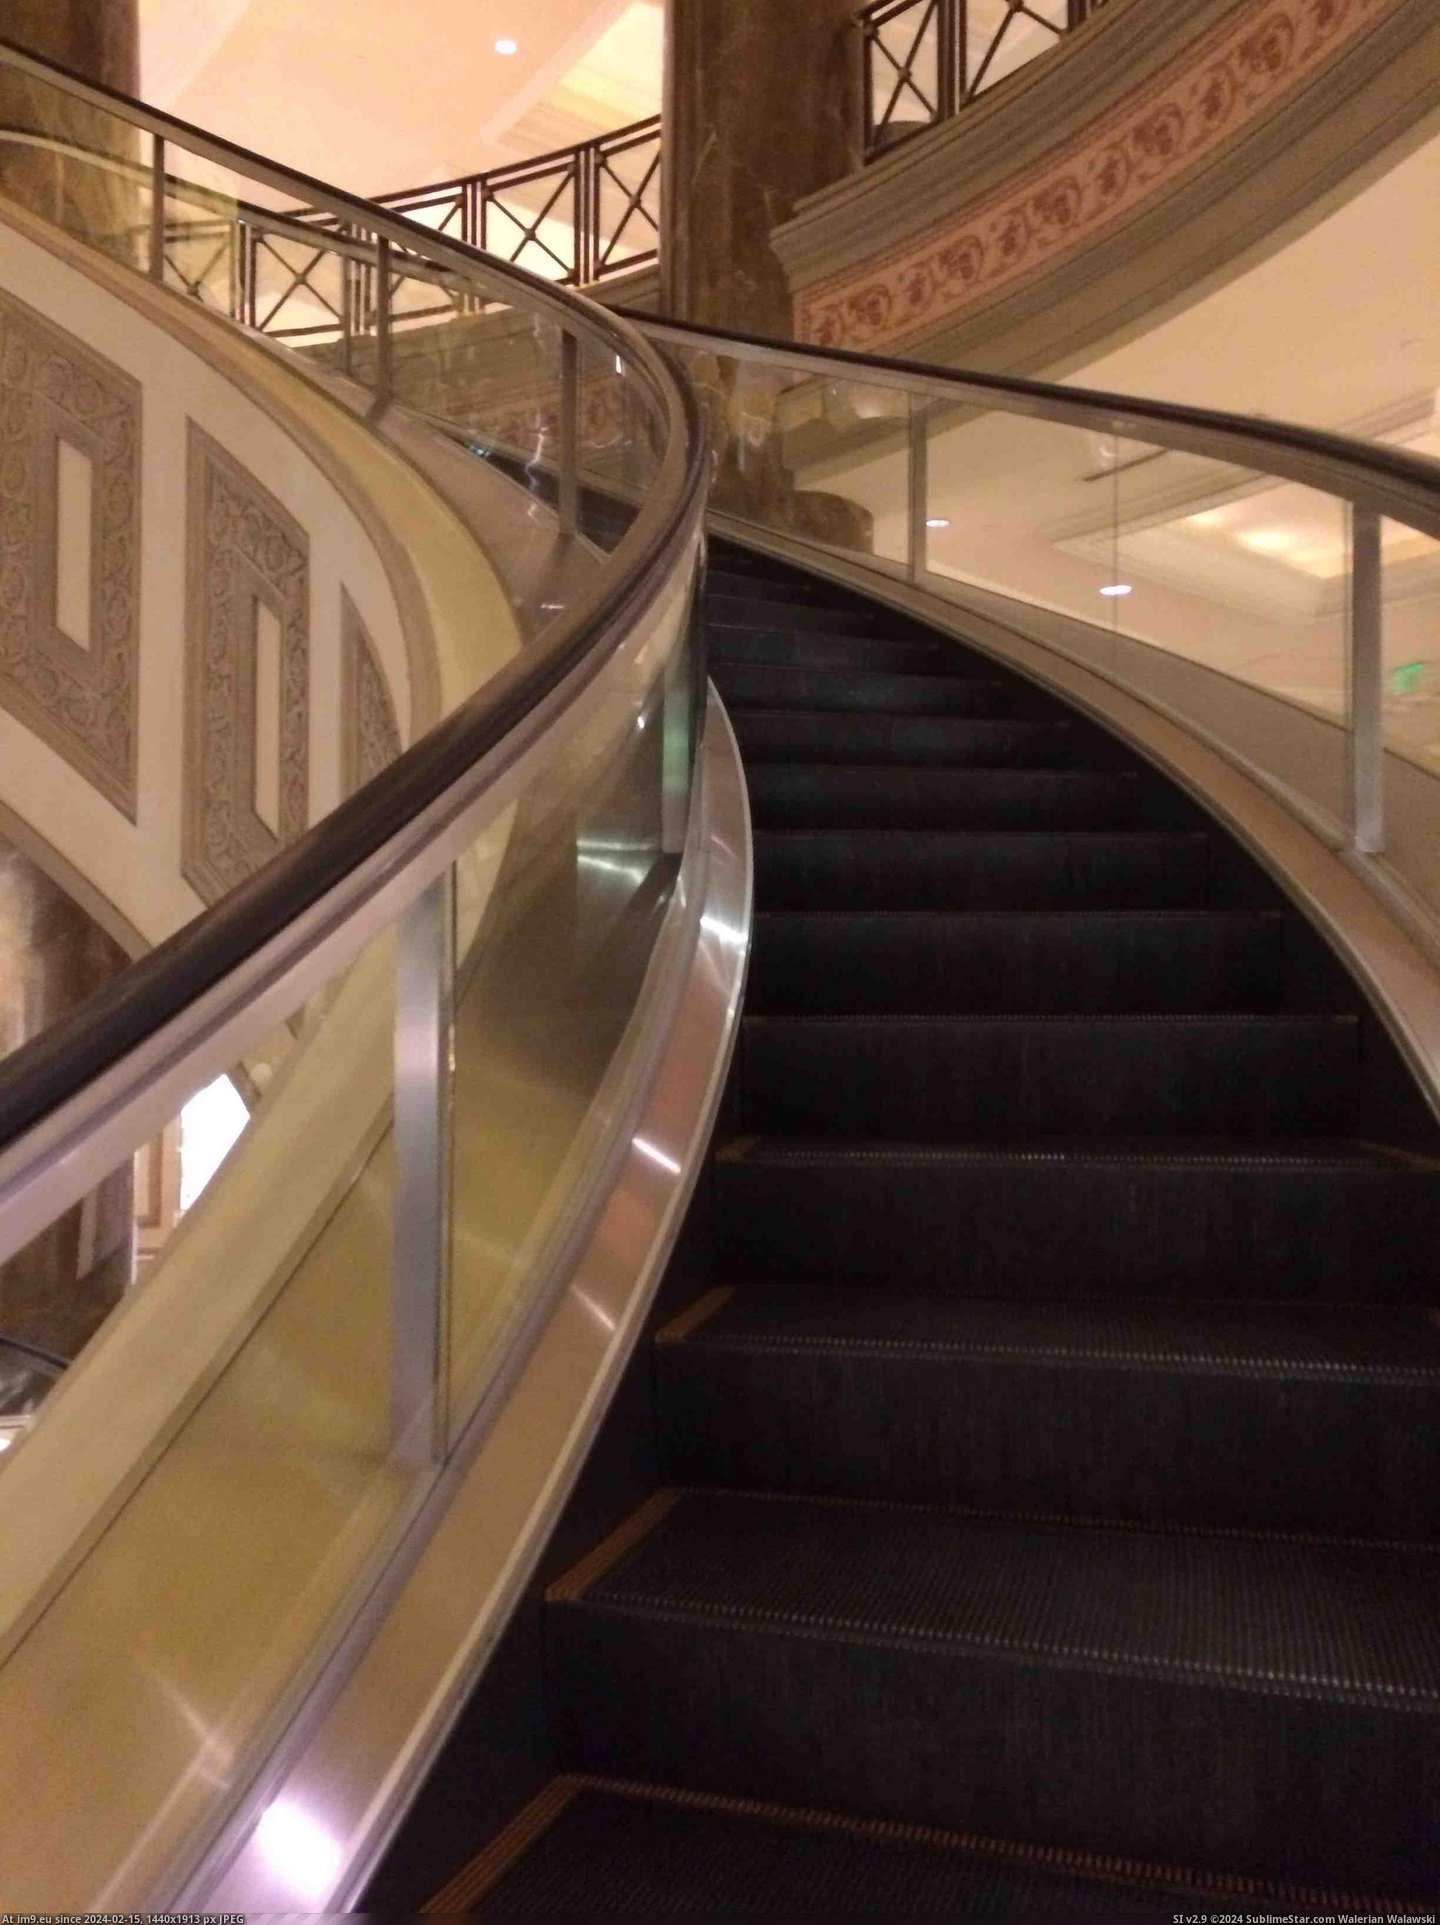 #Hotel #Escalators #Spiral [Mildlyinteresting] My hotel has spiral escalators Pic. (Bild von album My r/MILDLYINTERESTING favs))